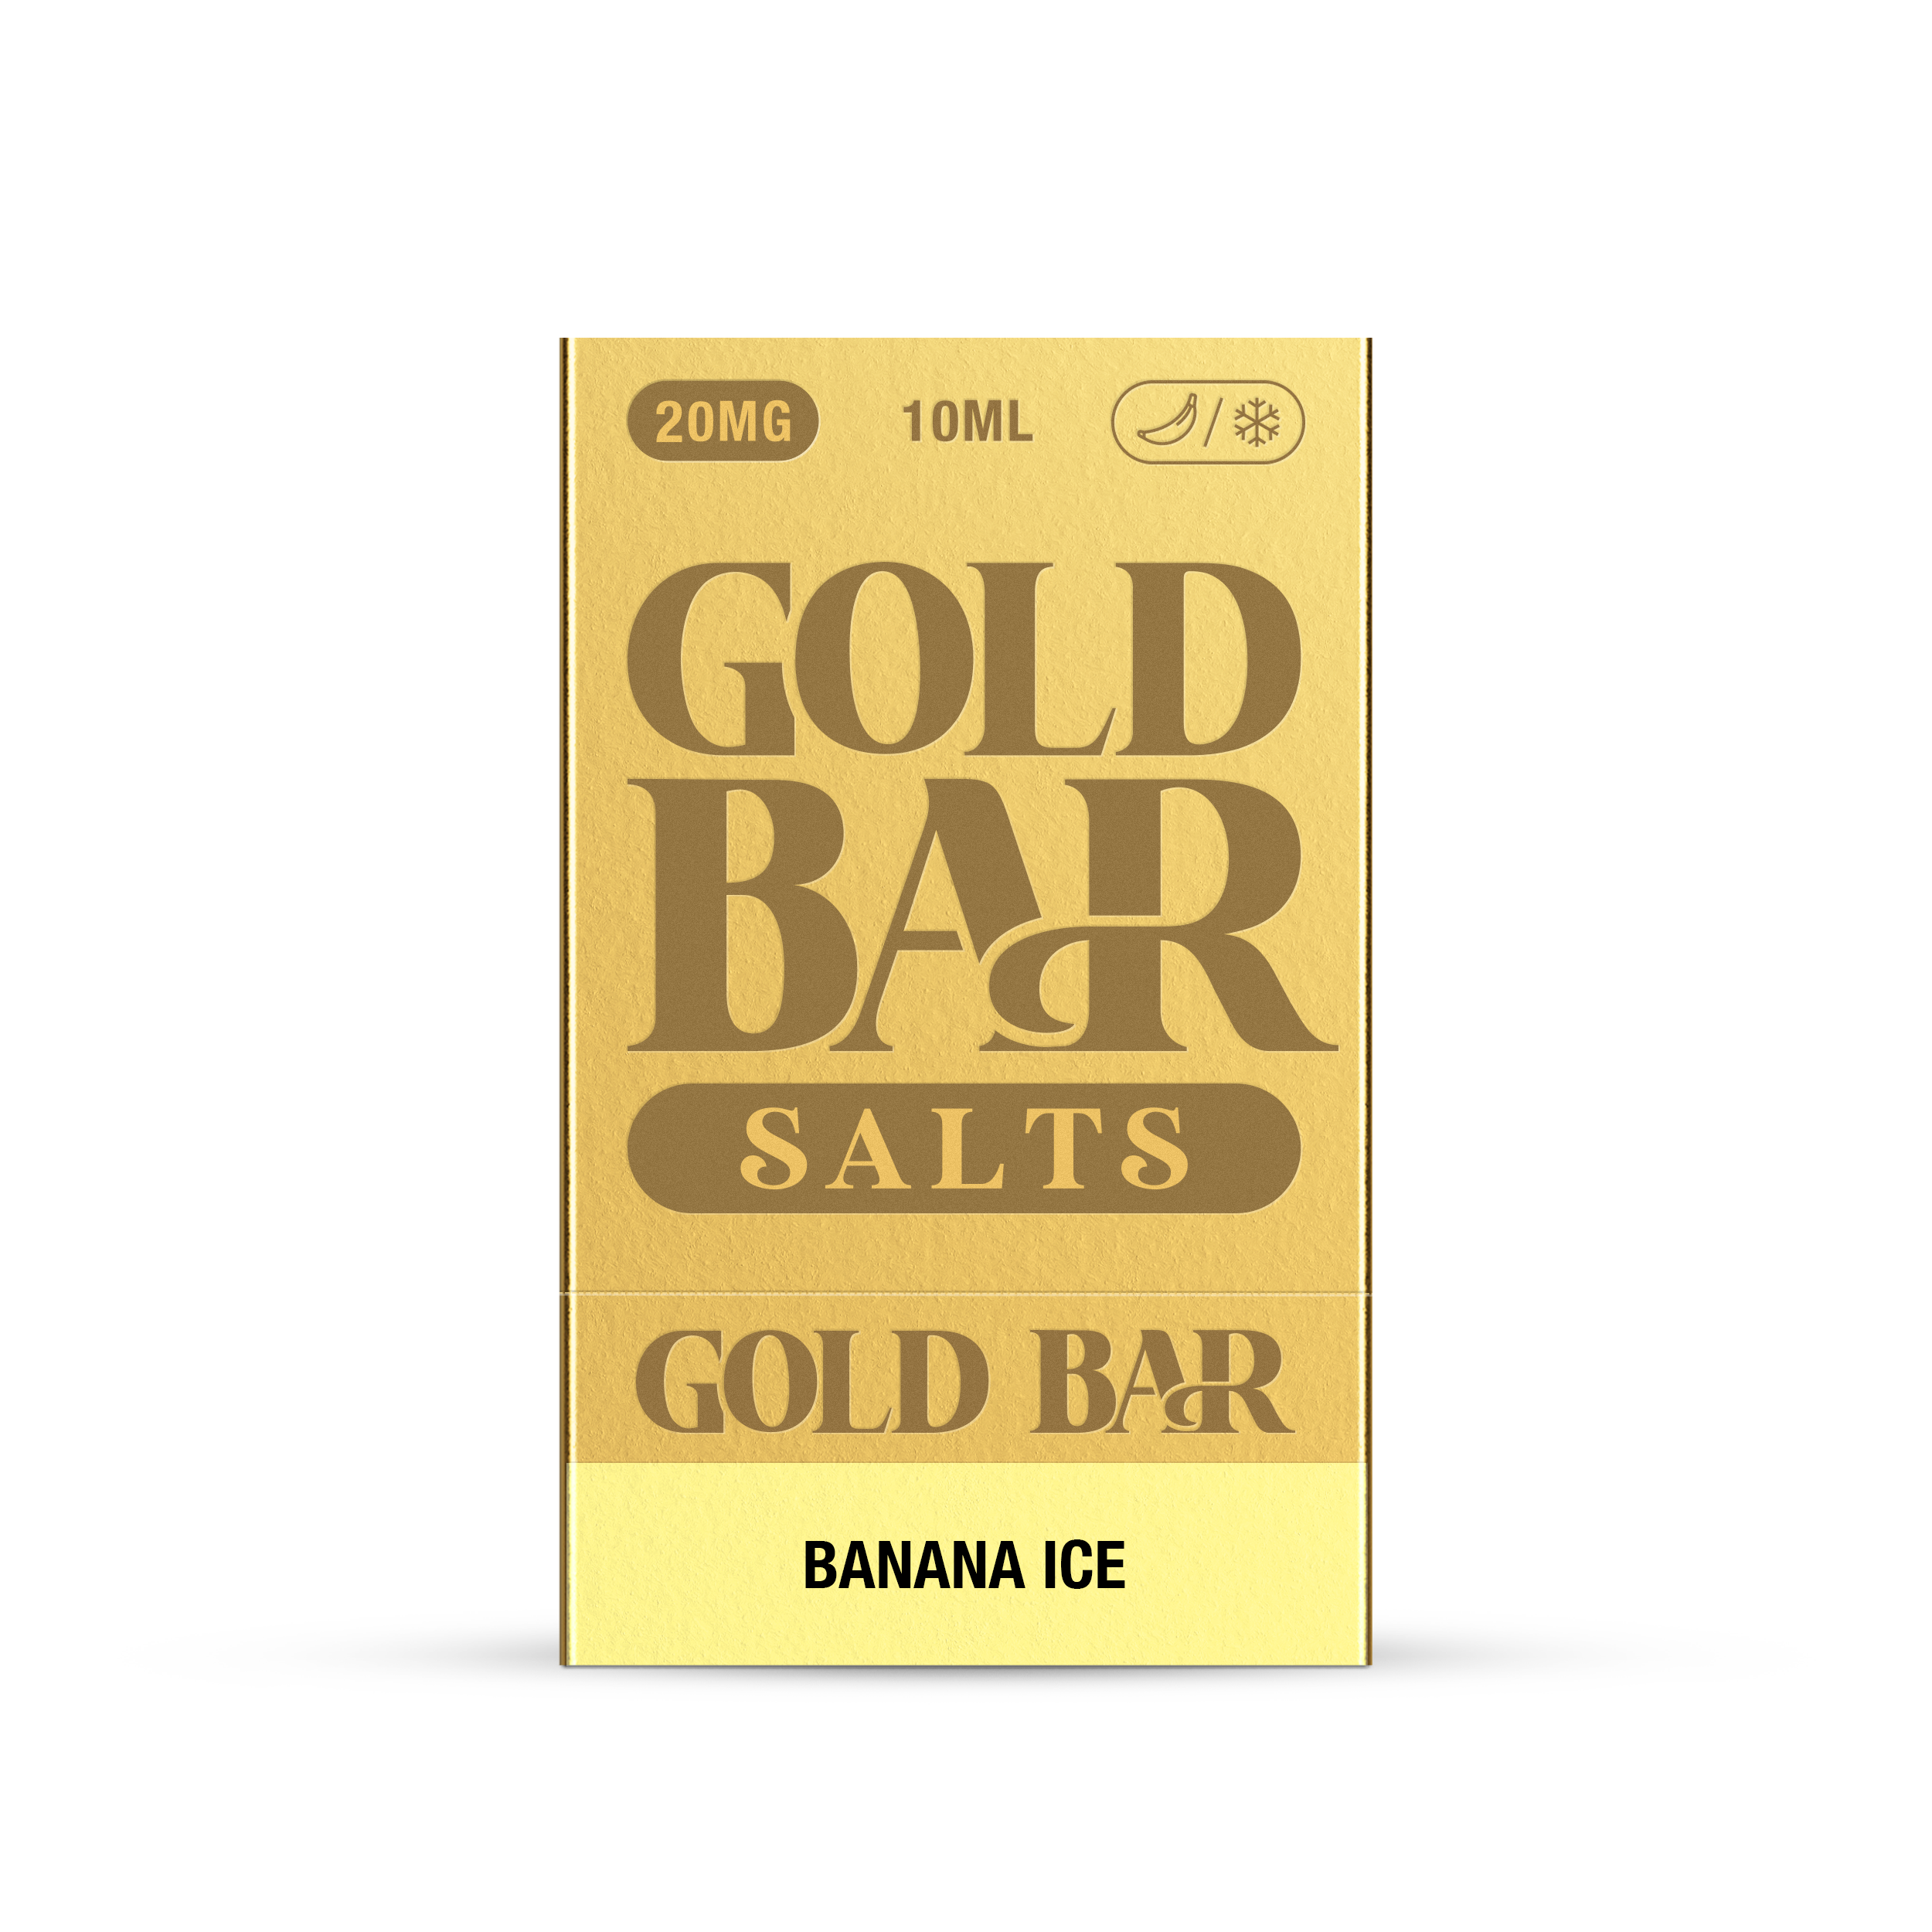 GOLD BAR SALTS 10ML BANANA ICE (10)